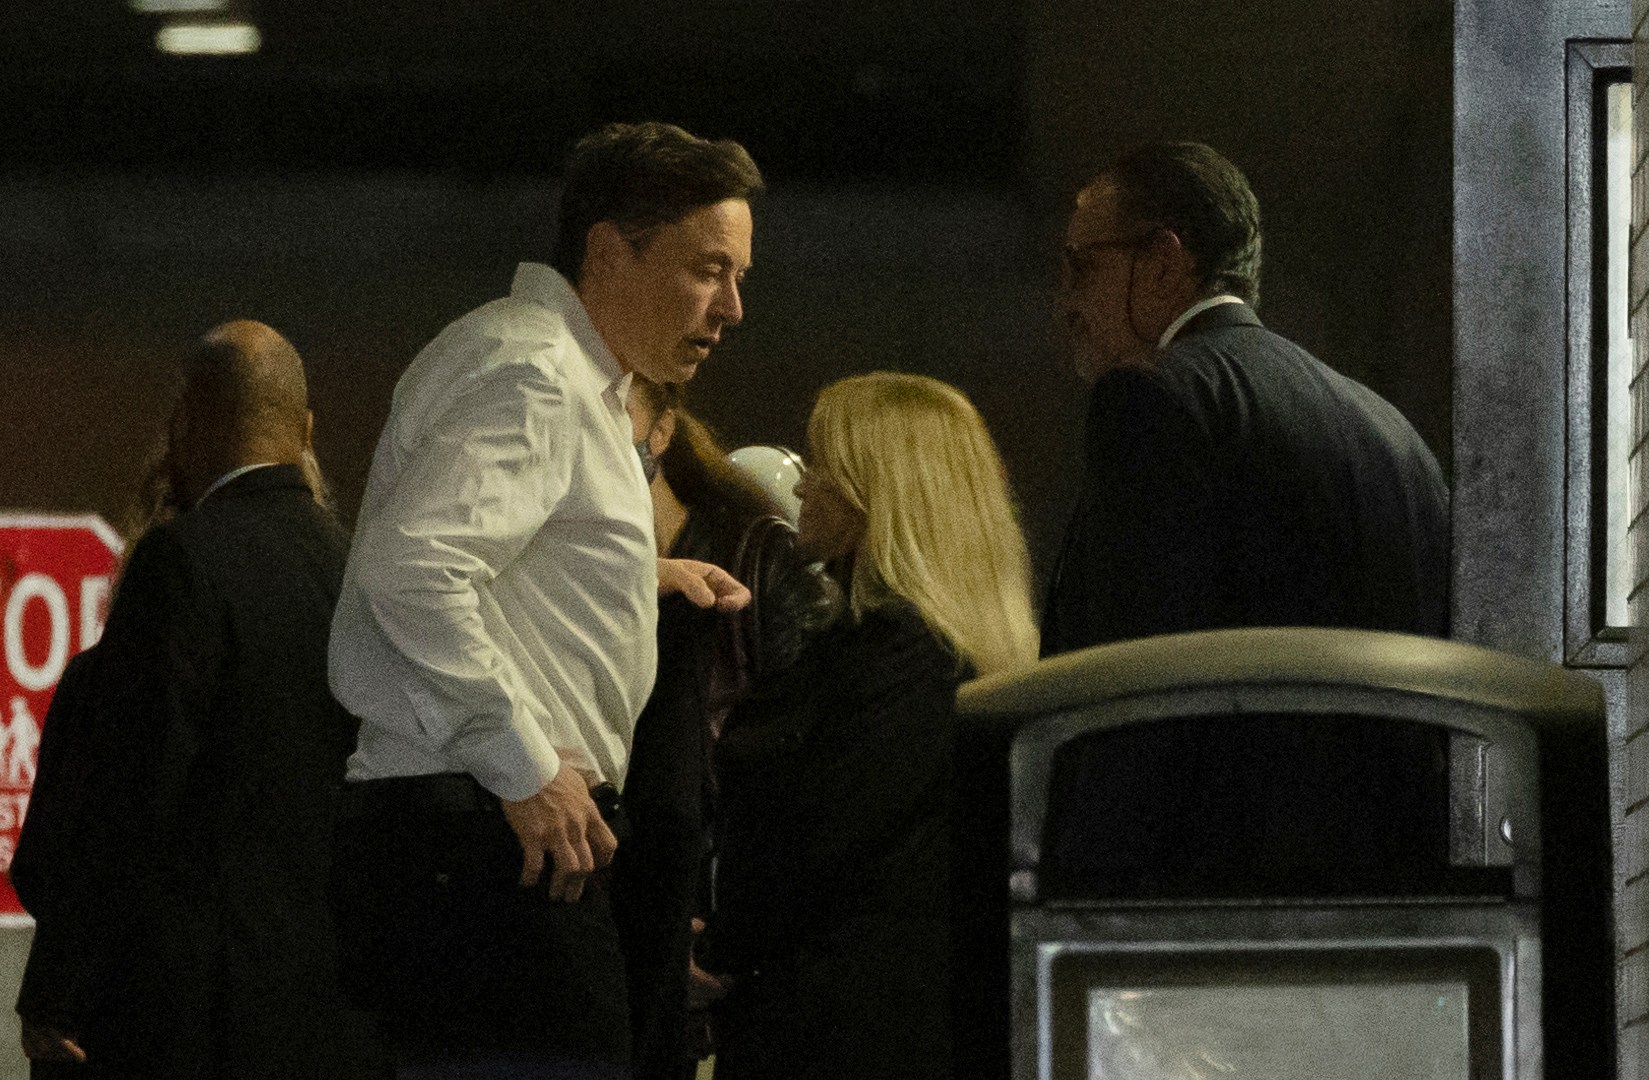 Le prochain drame d’Elon Musk : une expérience sur ses tweets Tesla |  L’actualité commerciale et économique